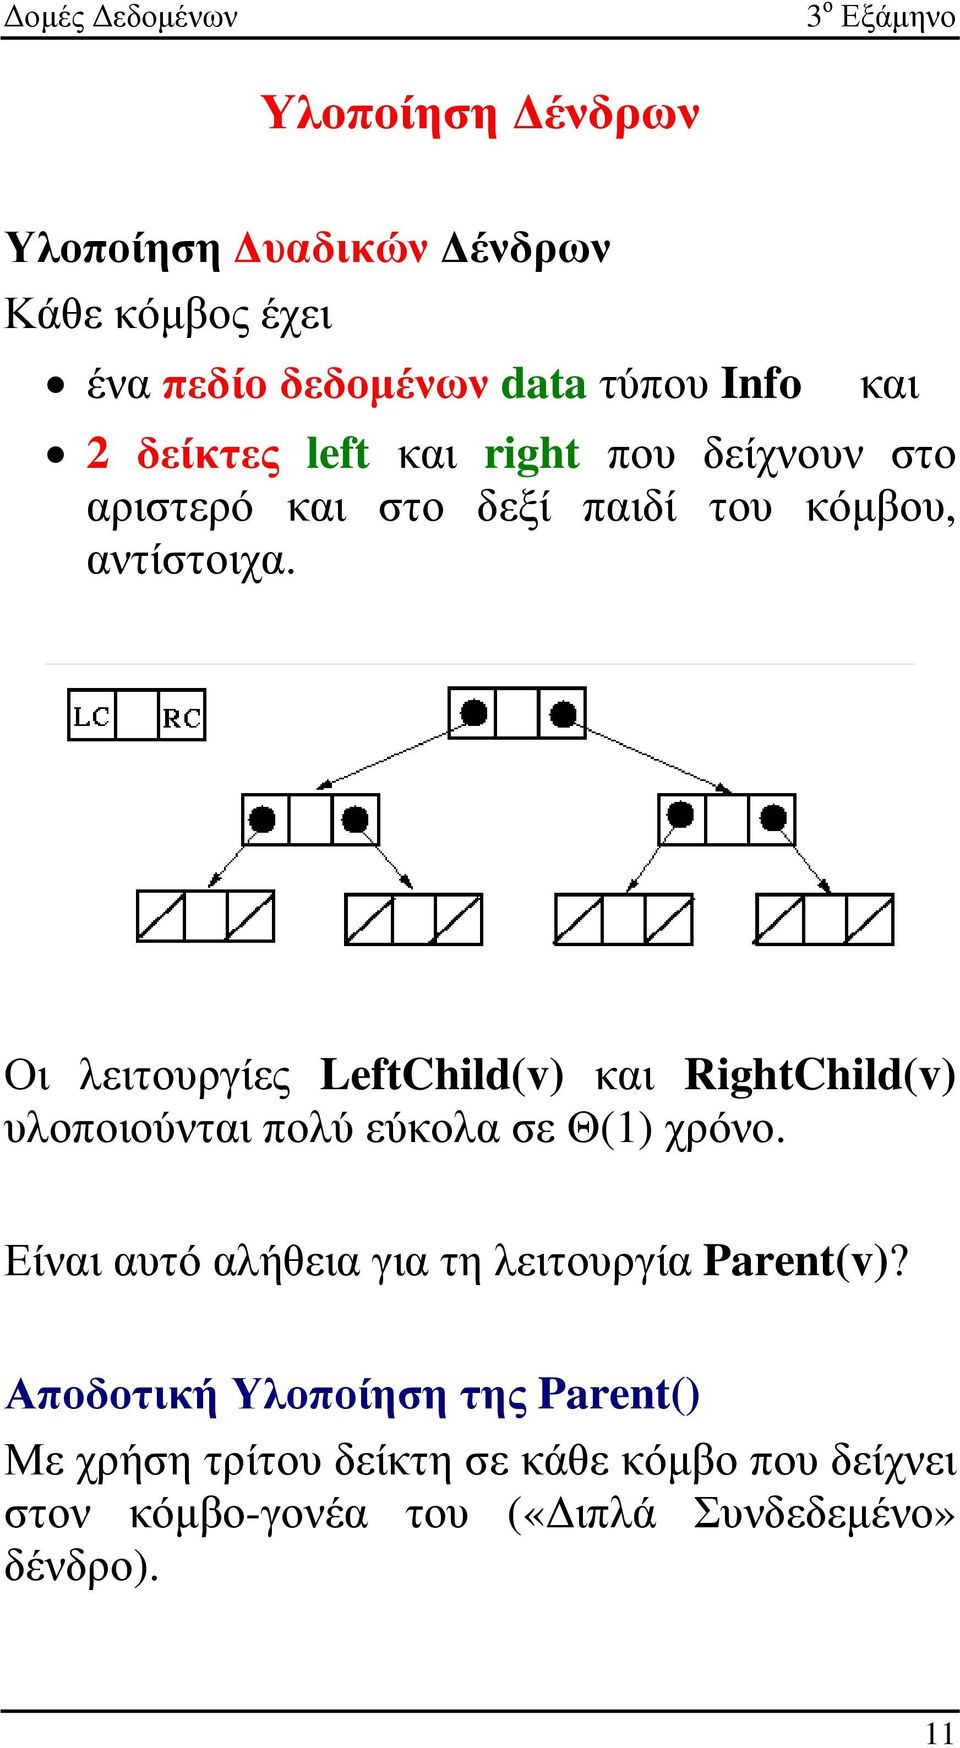 Οι λειτουργίες LeftChild(v) και RightChild(v) υλοποιούνται πολύ εύκολα σε Θ(1) χρόνο.